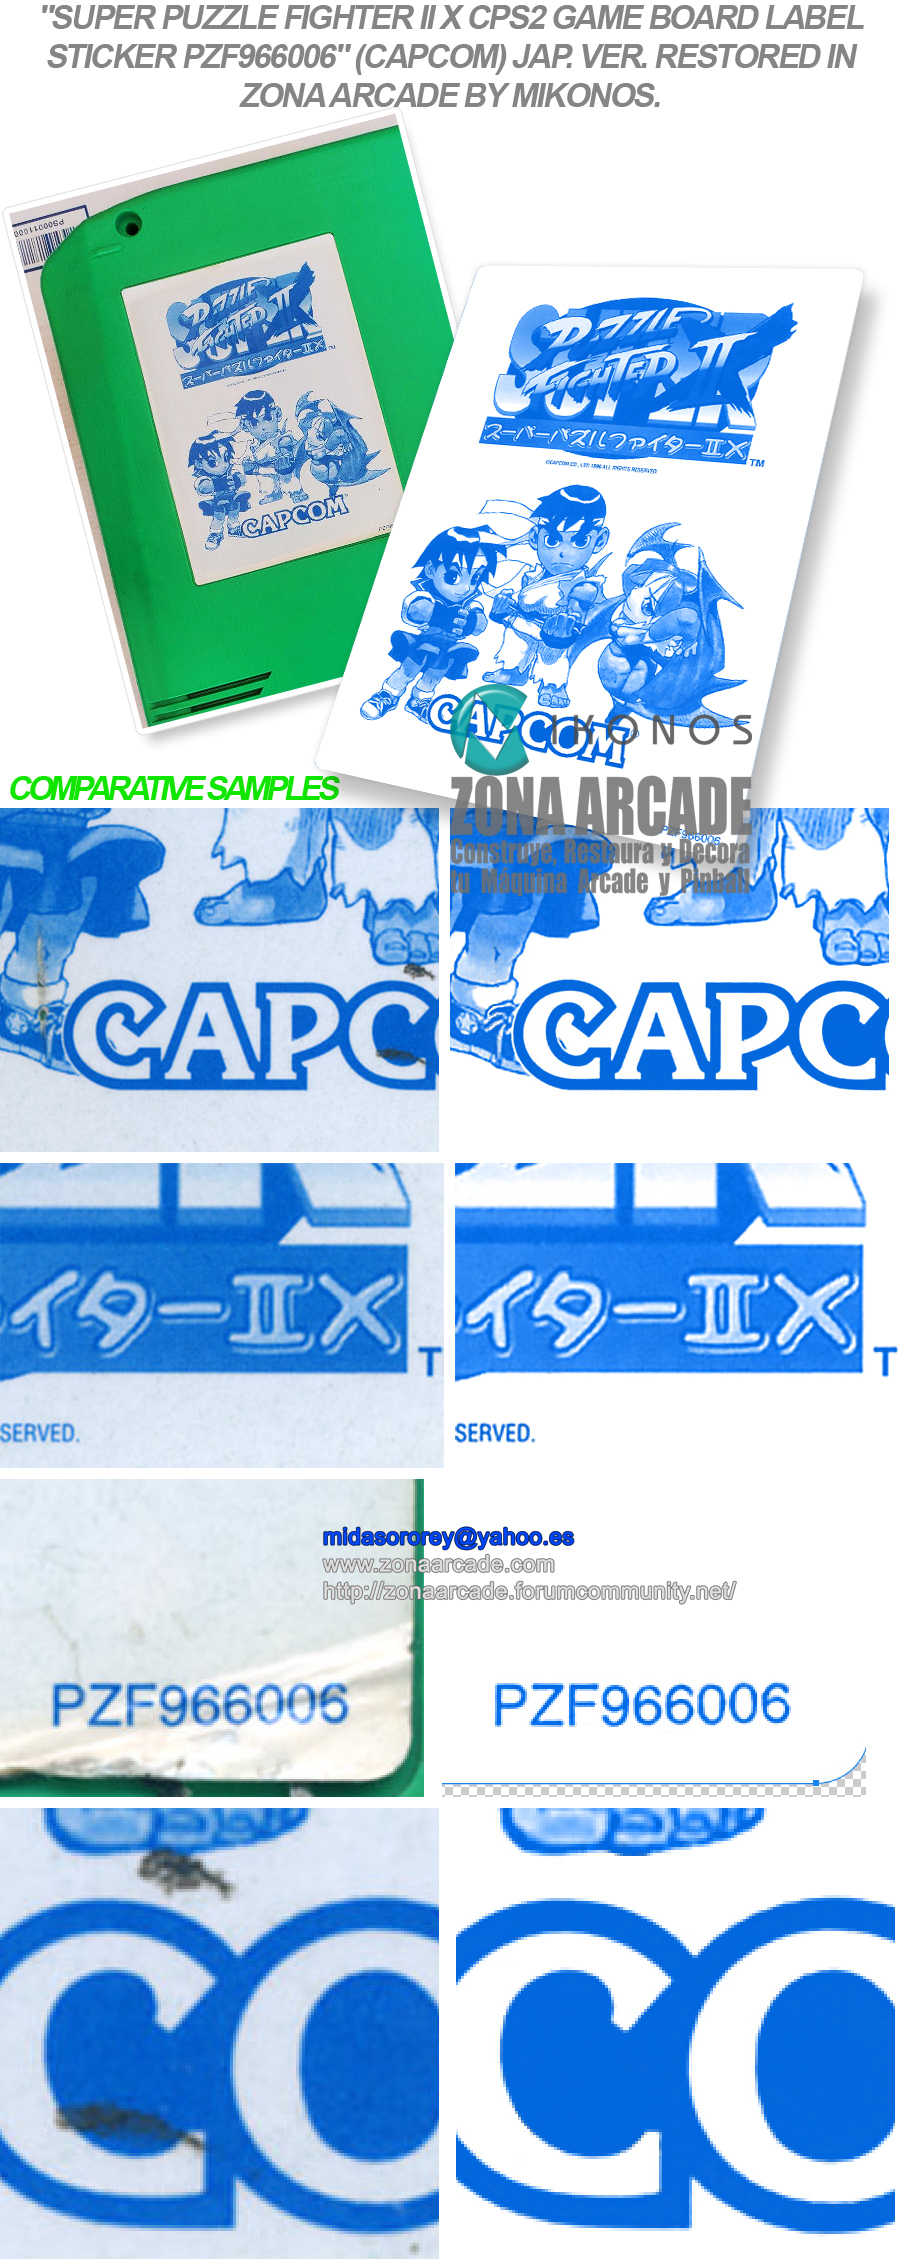 Super-Puzzle-Fighter-II-X-CPS2-Game-Board-Label-Sticker-PZF966006-Restored-Mikonos1